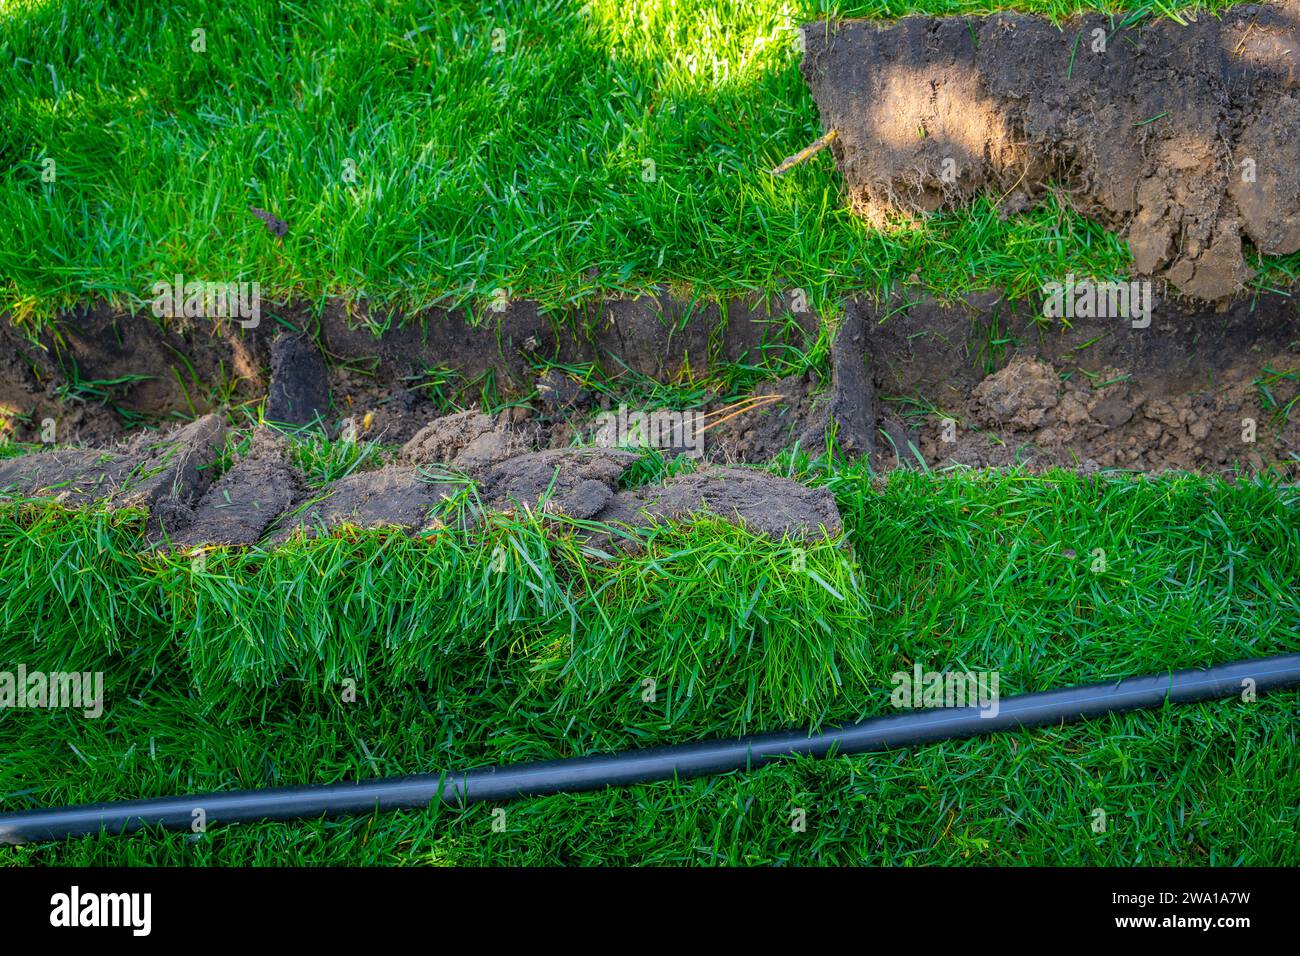 Selbstinstallation der Bewässerung mit einem einziehbaren Sprinkler im fertiggestellten Rasen. Verlegung von Wasserrohren mit Sprühgeräten unter dem Rasen zur Bewässerung. Stockfoto